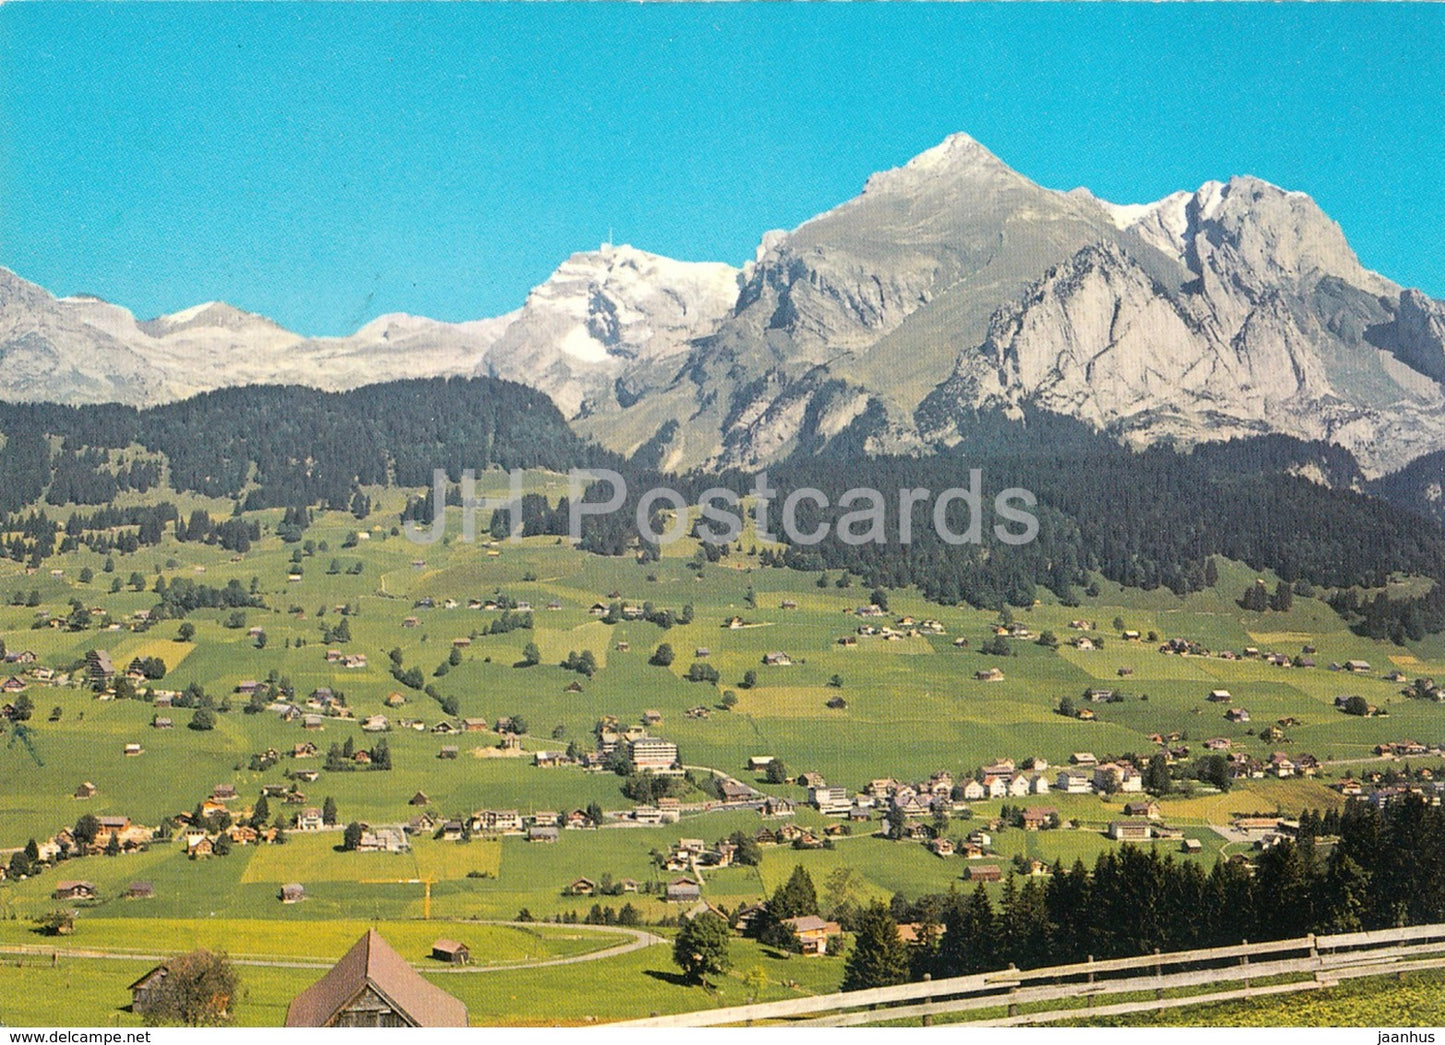 Wildhaus - Lisighaus mit Santis und Schafberg - 538 - 1986 - Switzerland - used - JH Postcards